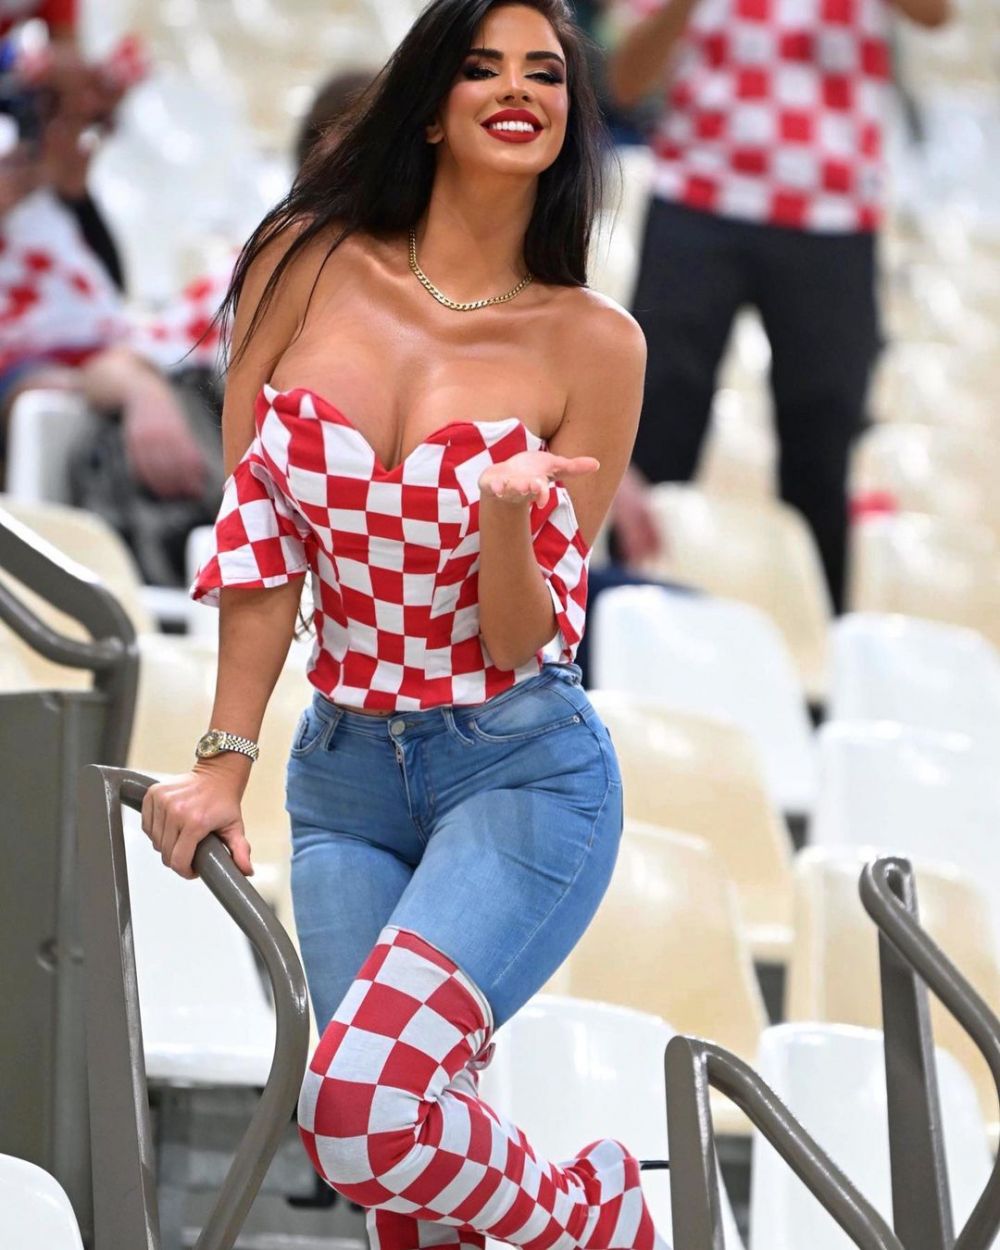 Imaginile pentru care fanii i-au cerut Ivanei Knoll să se apuce de OnlyFans. Cum s-a pozat fosta Miss Croația_137